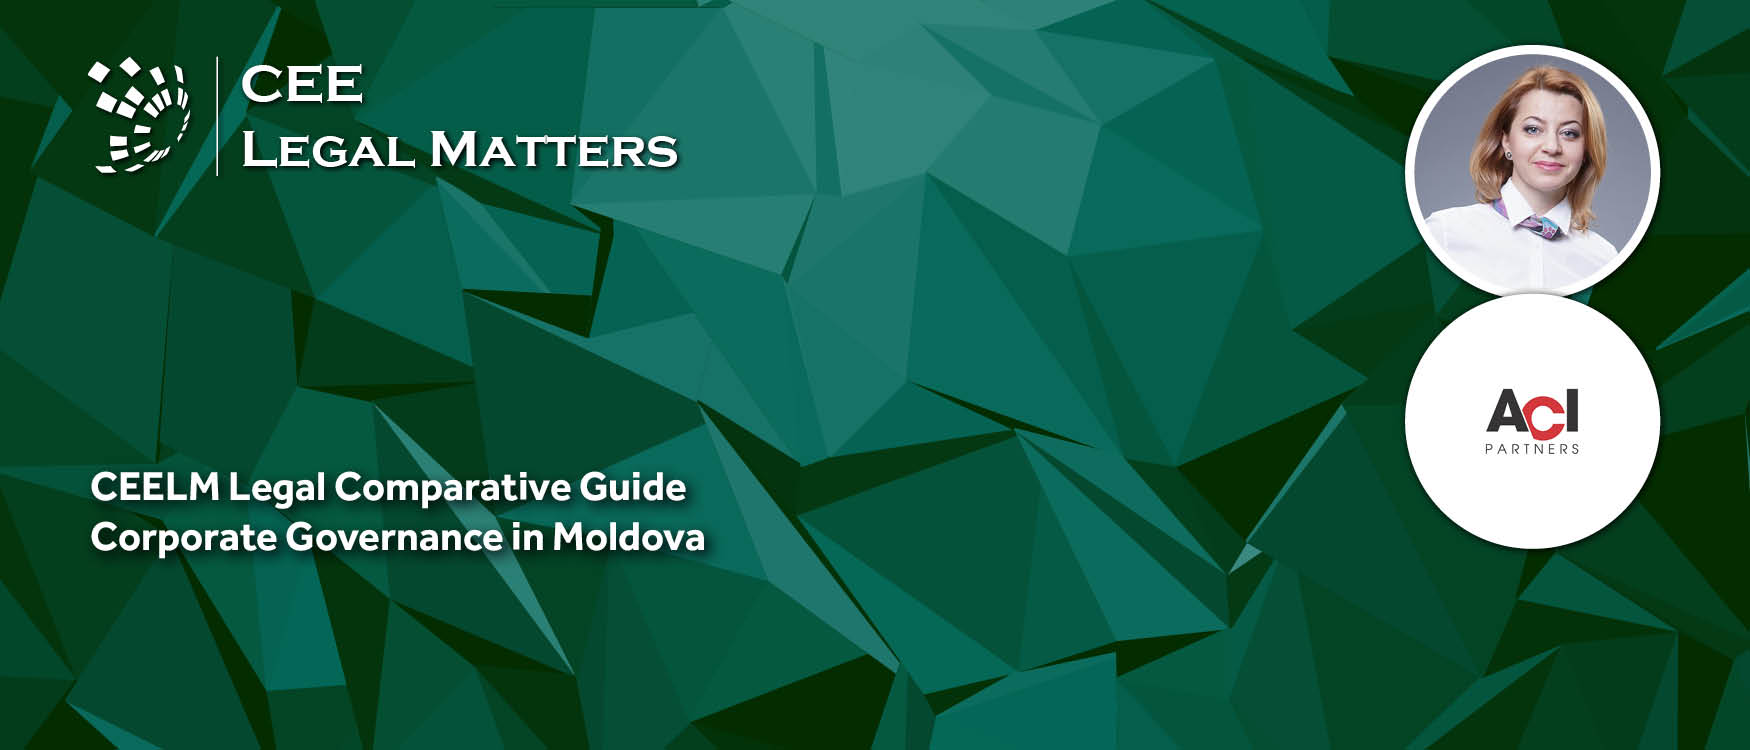 Corporate Governance in Moldova